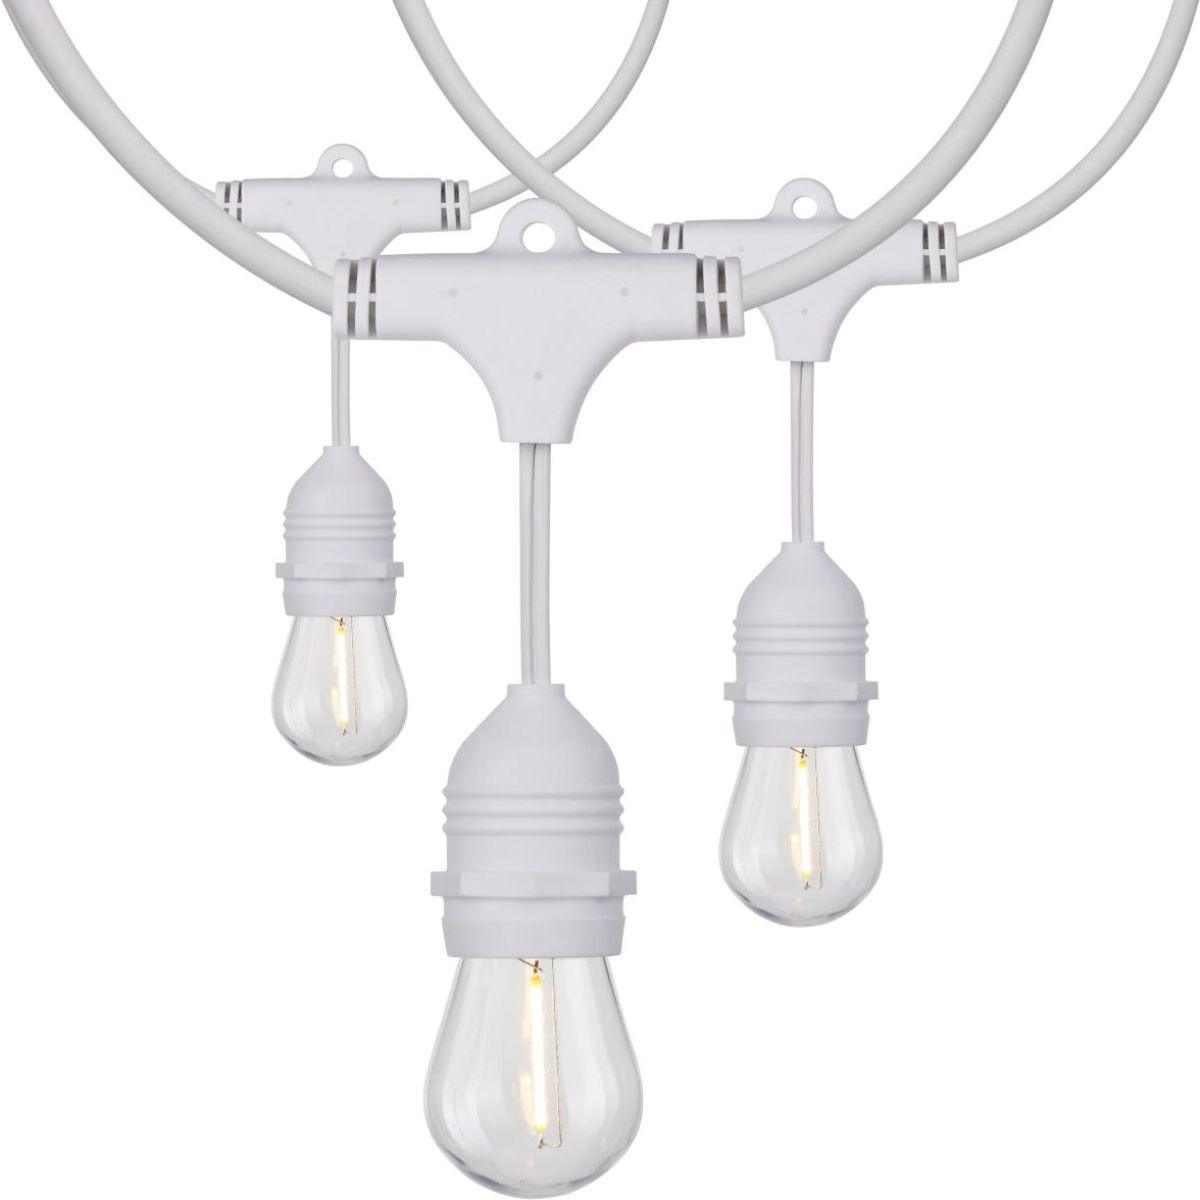 24 Feet LED String Light, 12 S14 bulbs, Warm White 2200K, 120V, Indoor/Outdoor, White Cord